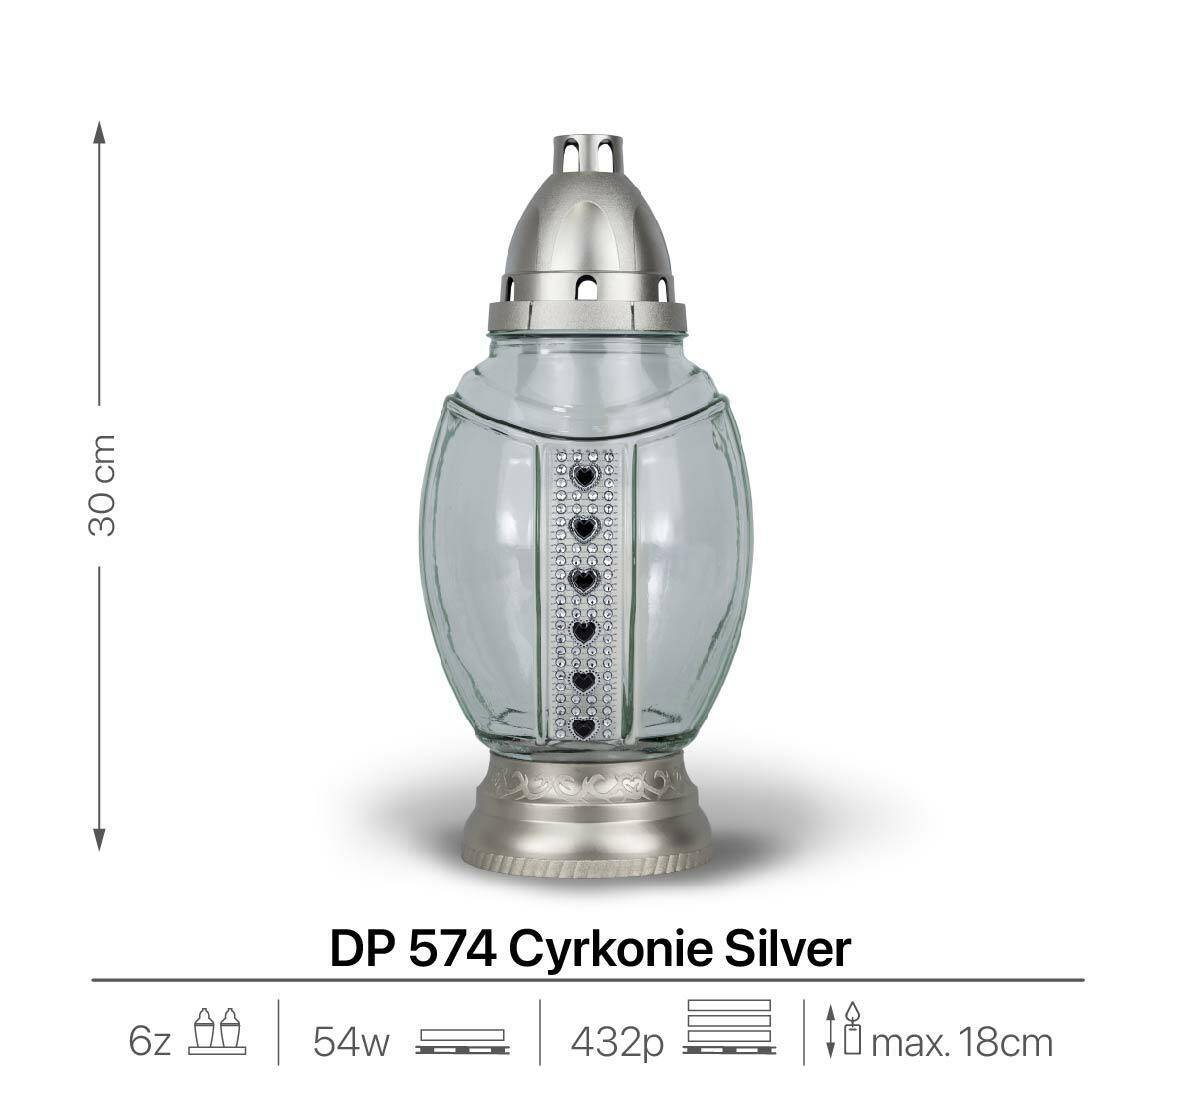 DP 574 Cyrkonie Silver